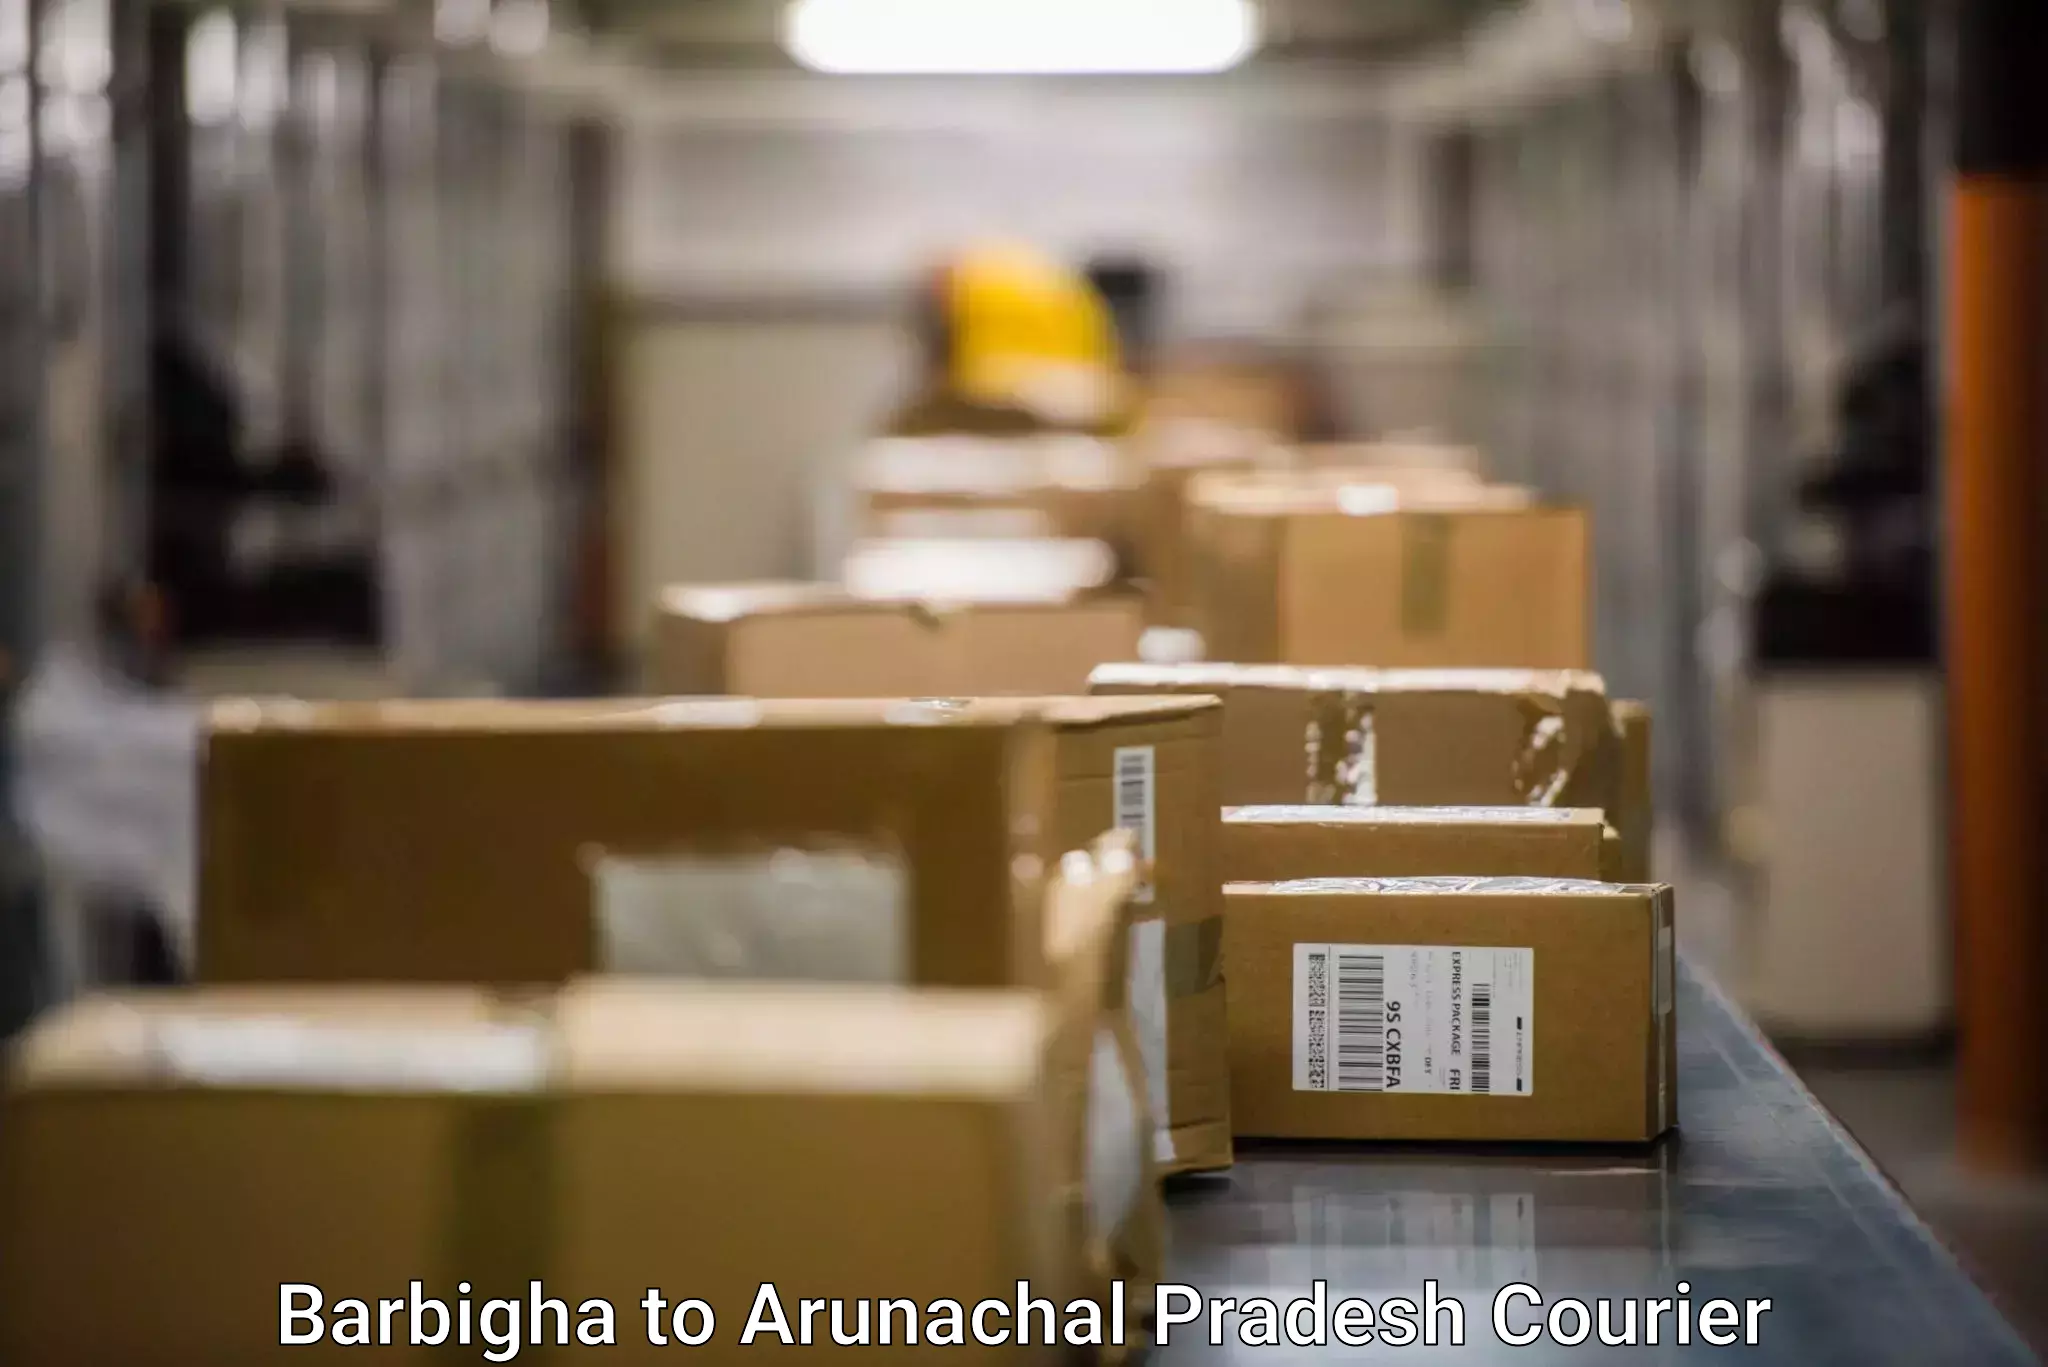 International parcel service Barbigha to Arunachal Pradesh